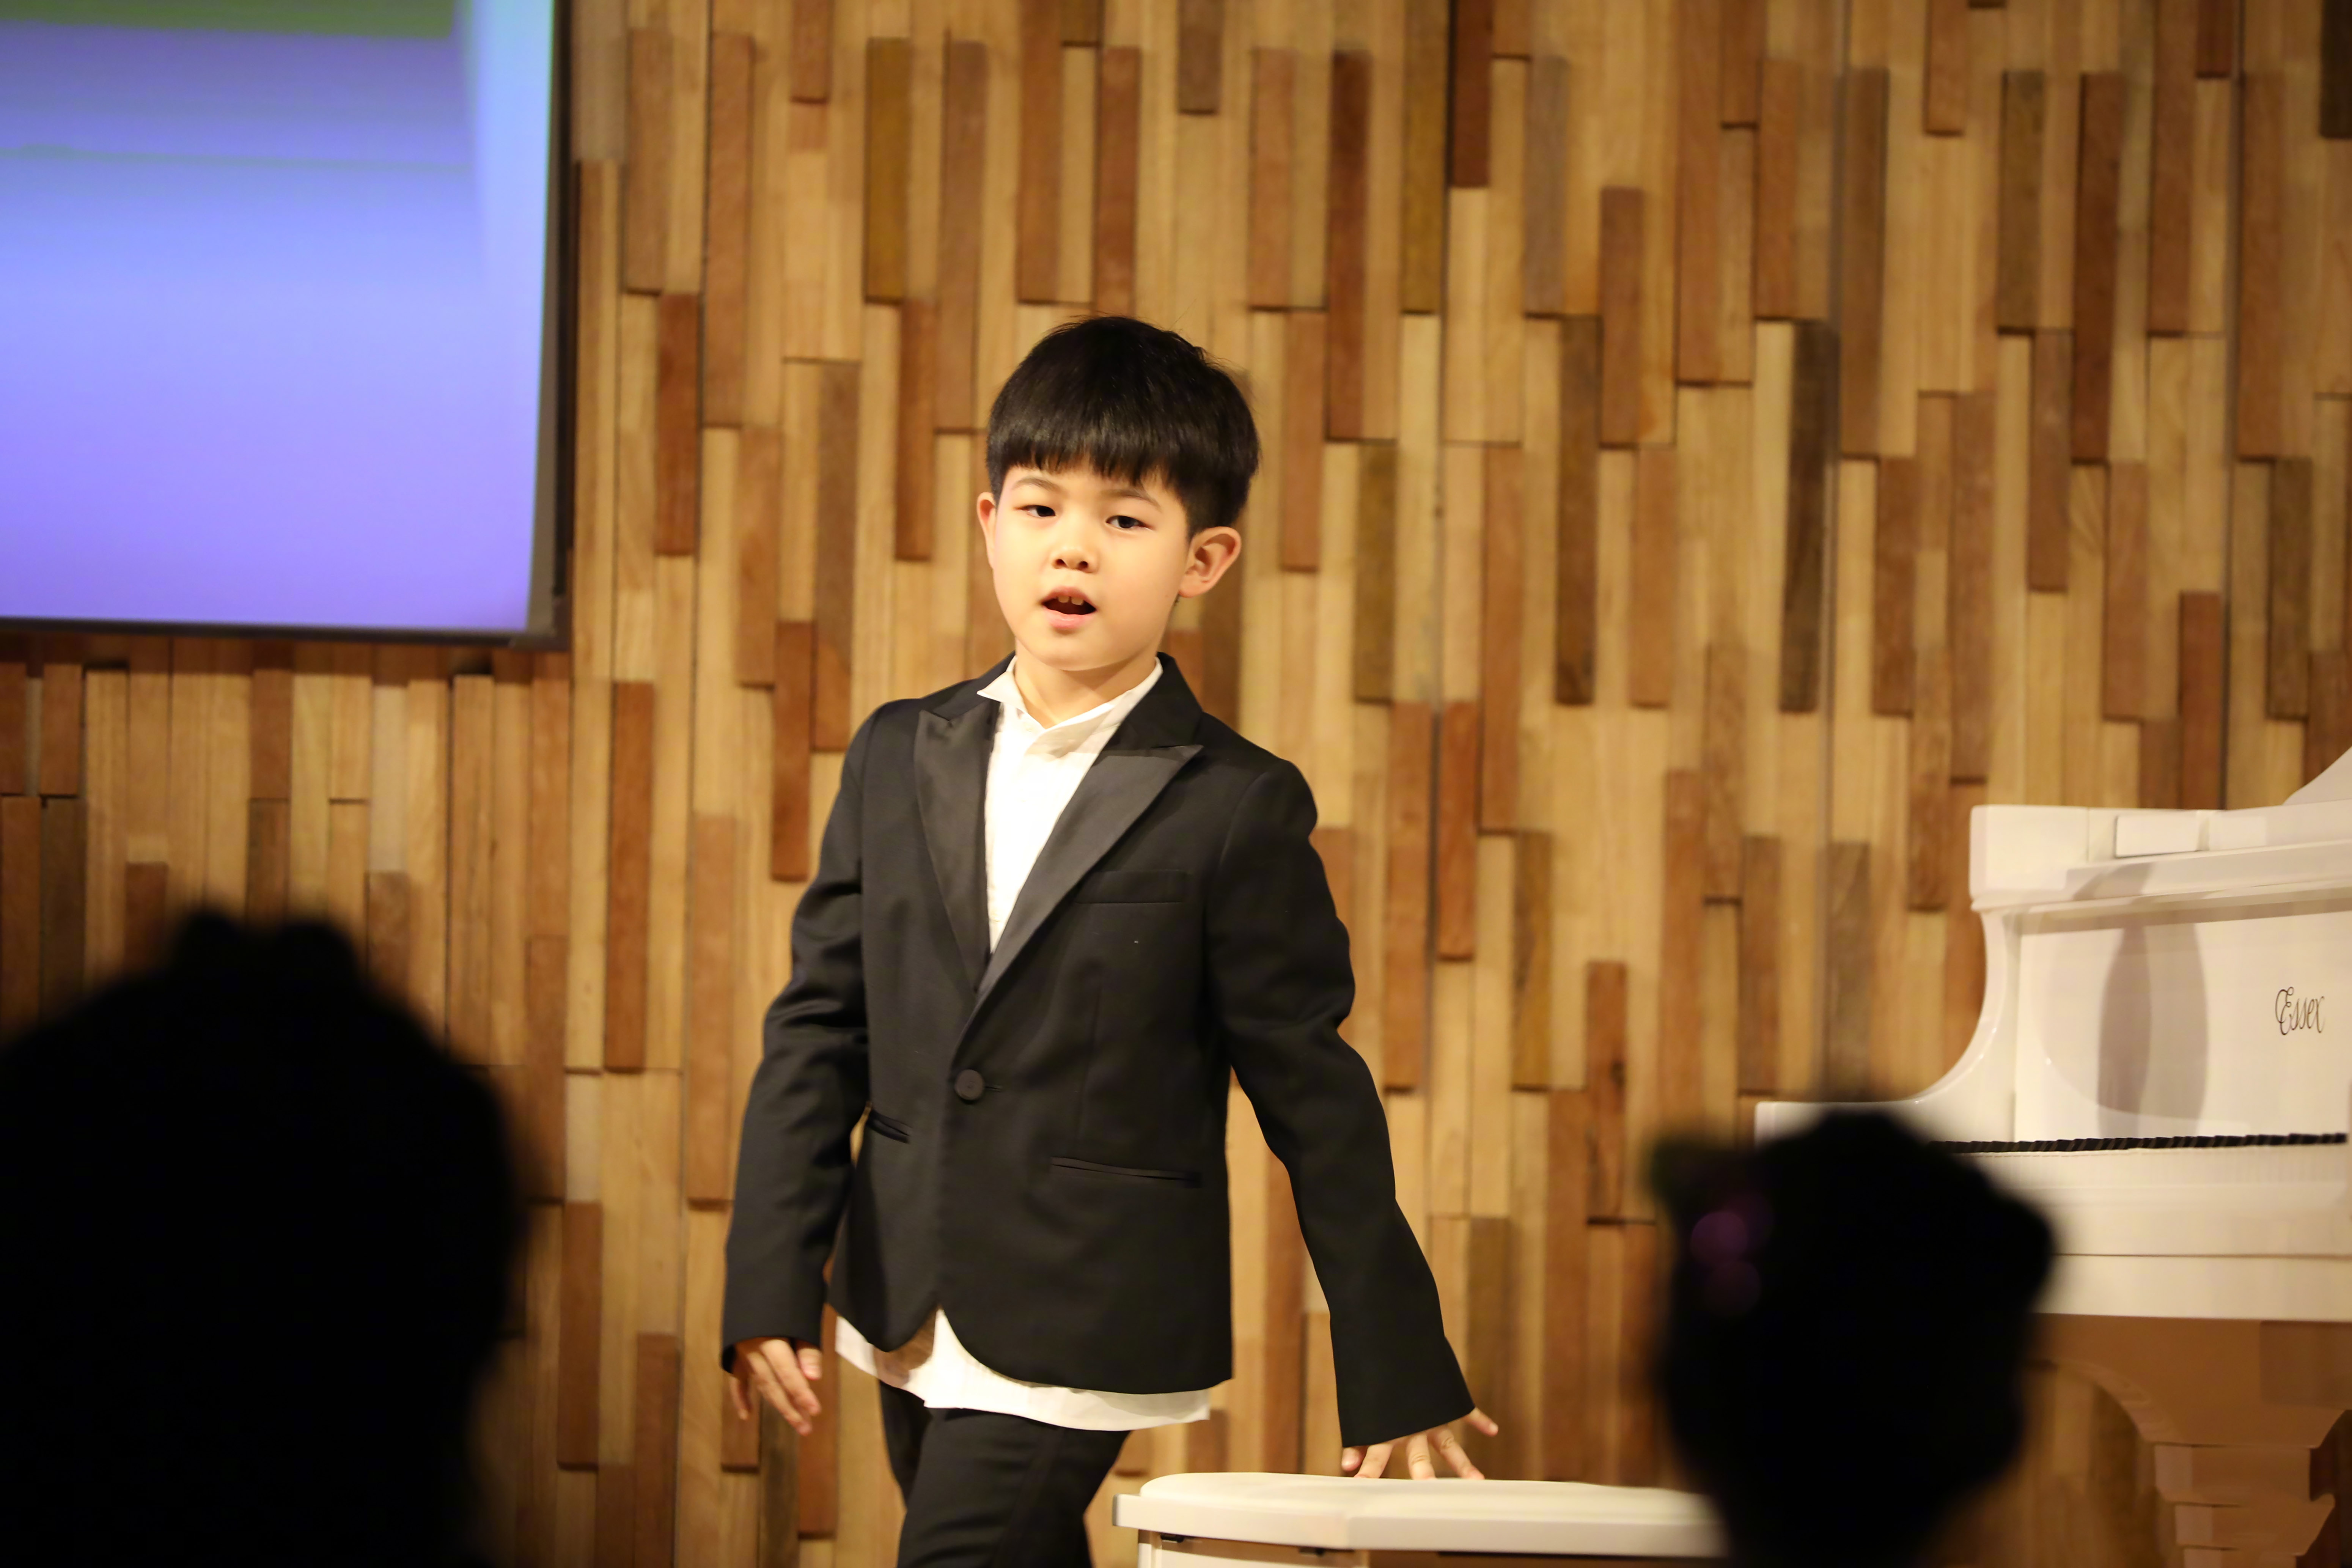 1/ 12 1月12日,胡可在微博晒出儿子安吉弹钢琴的近照,照片中安吉穿着